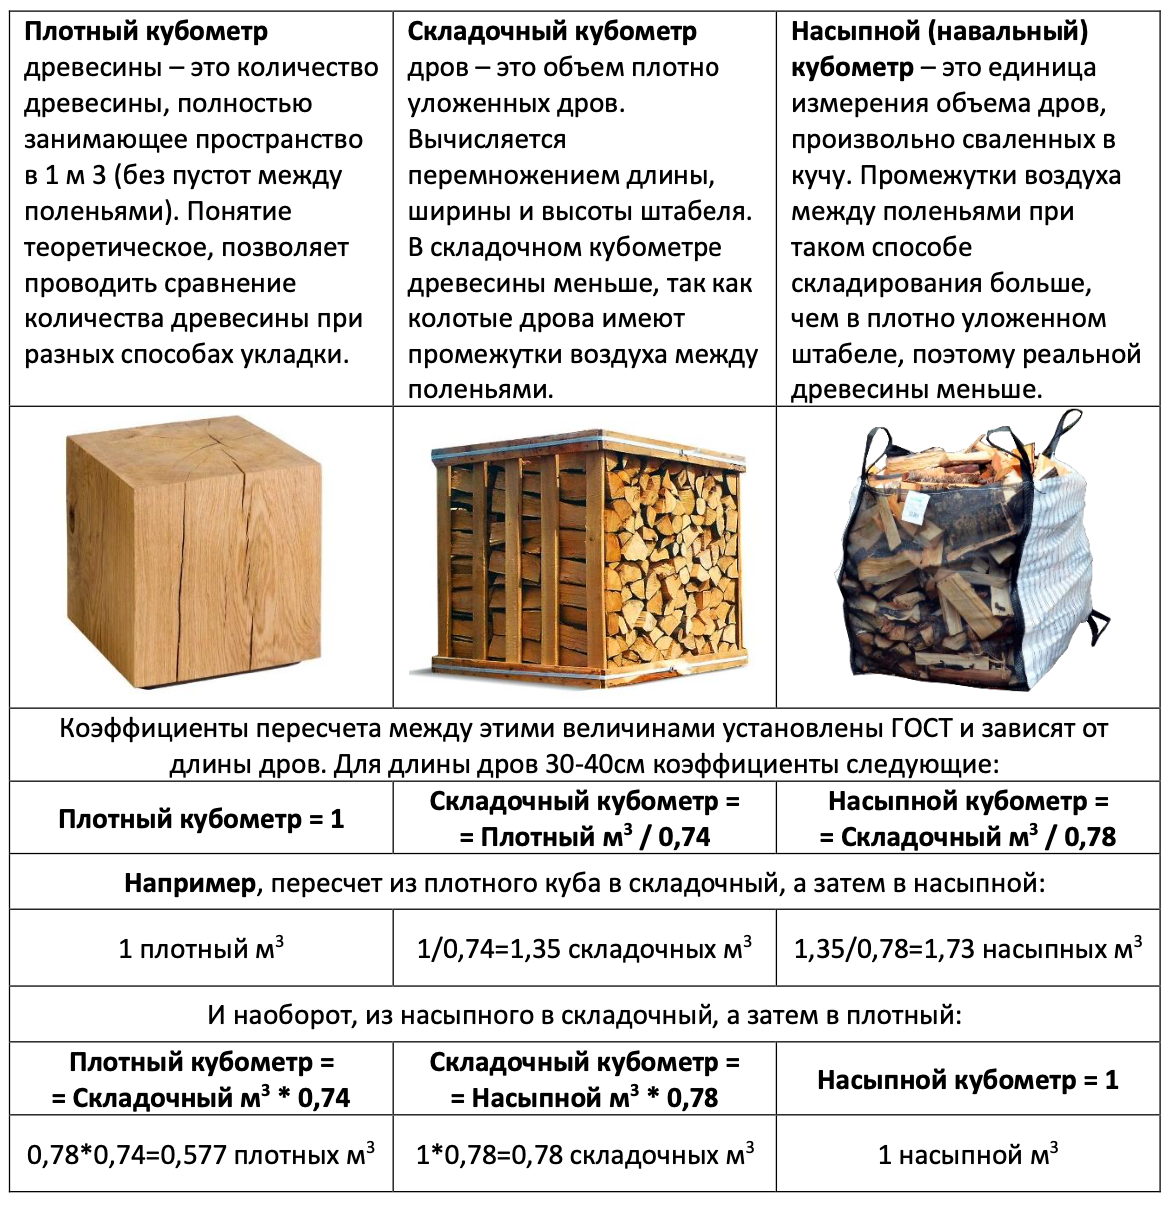 Фишка дров это сколько. ГАЗ 66 объем дров. Складометр дров это сколько. Навальный куб дров сколько.